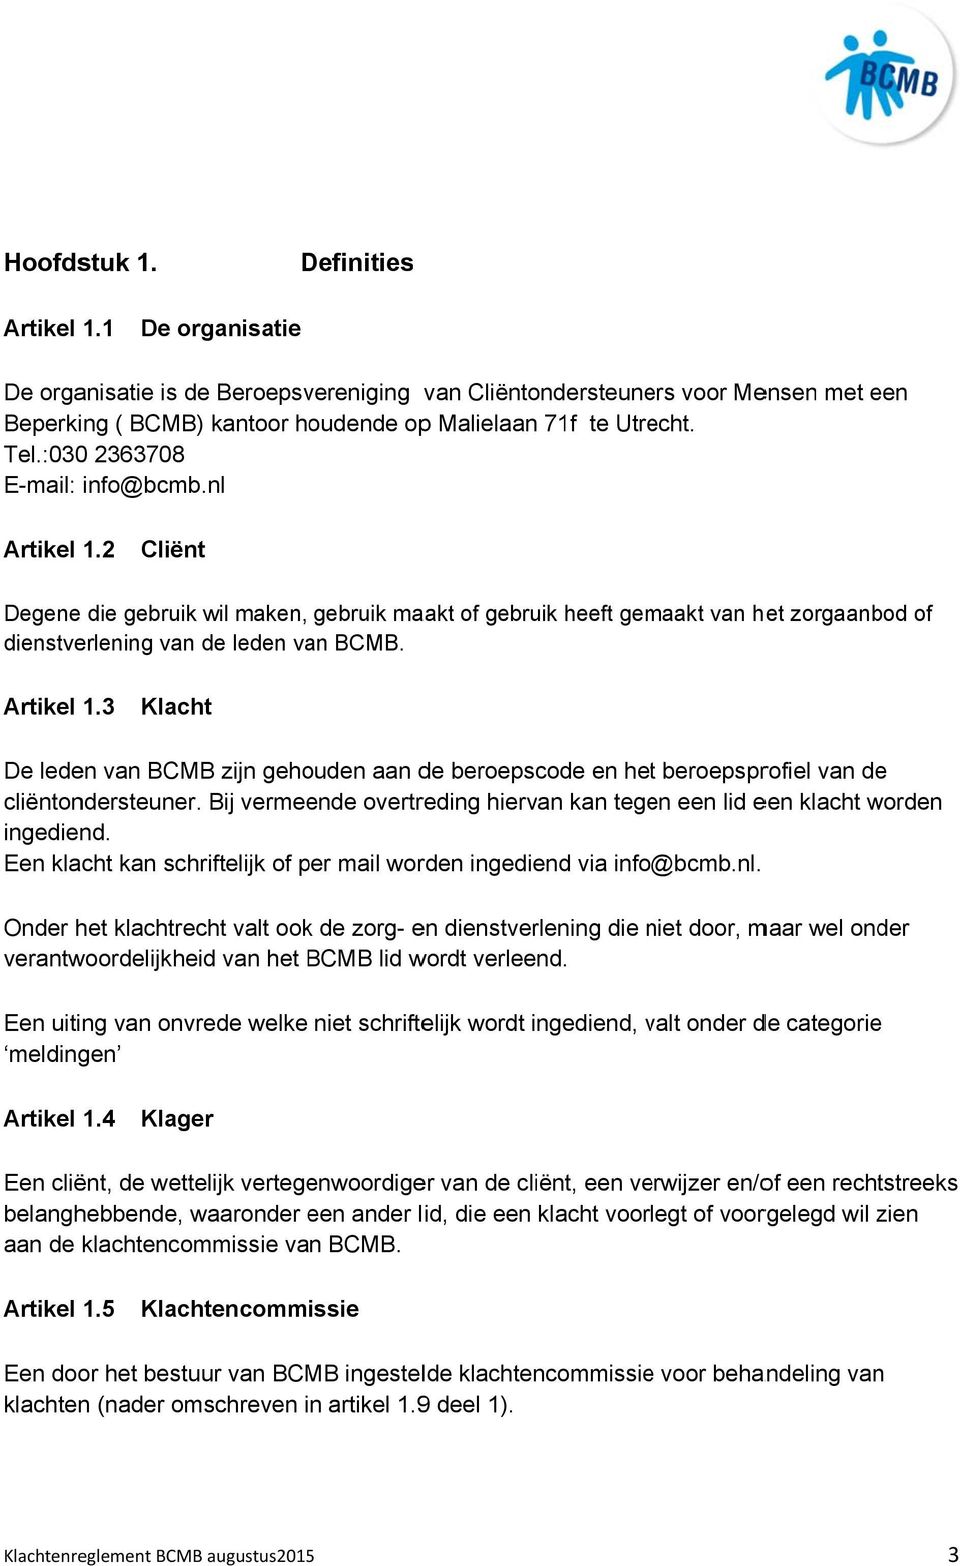 Bij vermeende overtreding hiervan kan tegen een lid een klacht worden ingediend. Een klacht kan schriftelijk of per mail worden ingediend via info@bcmb.nl.